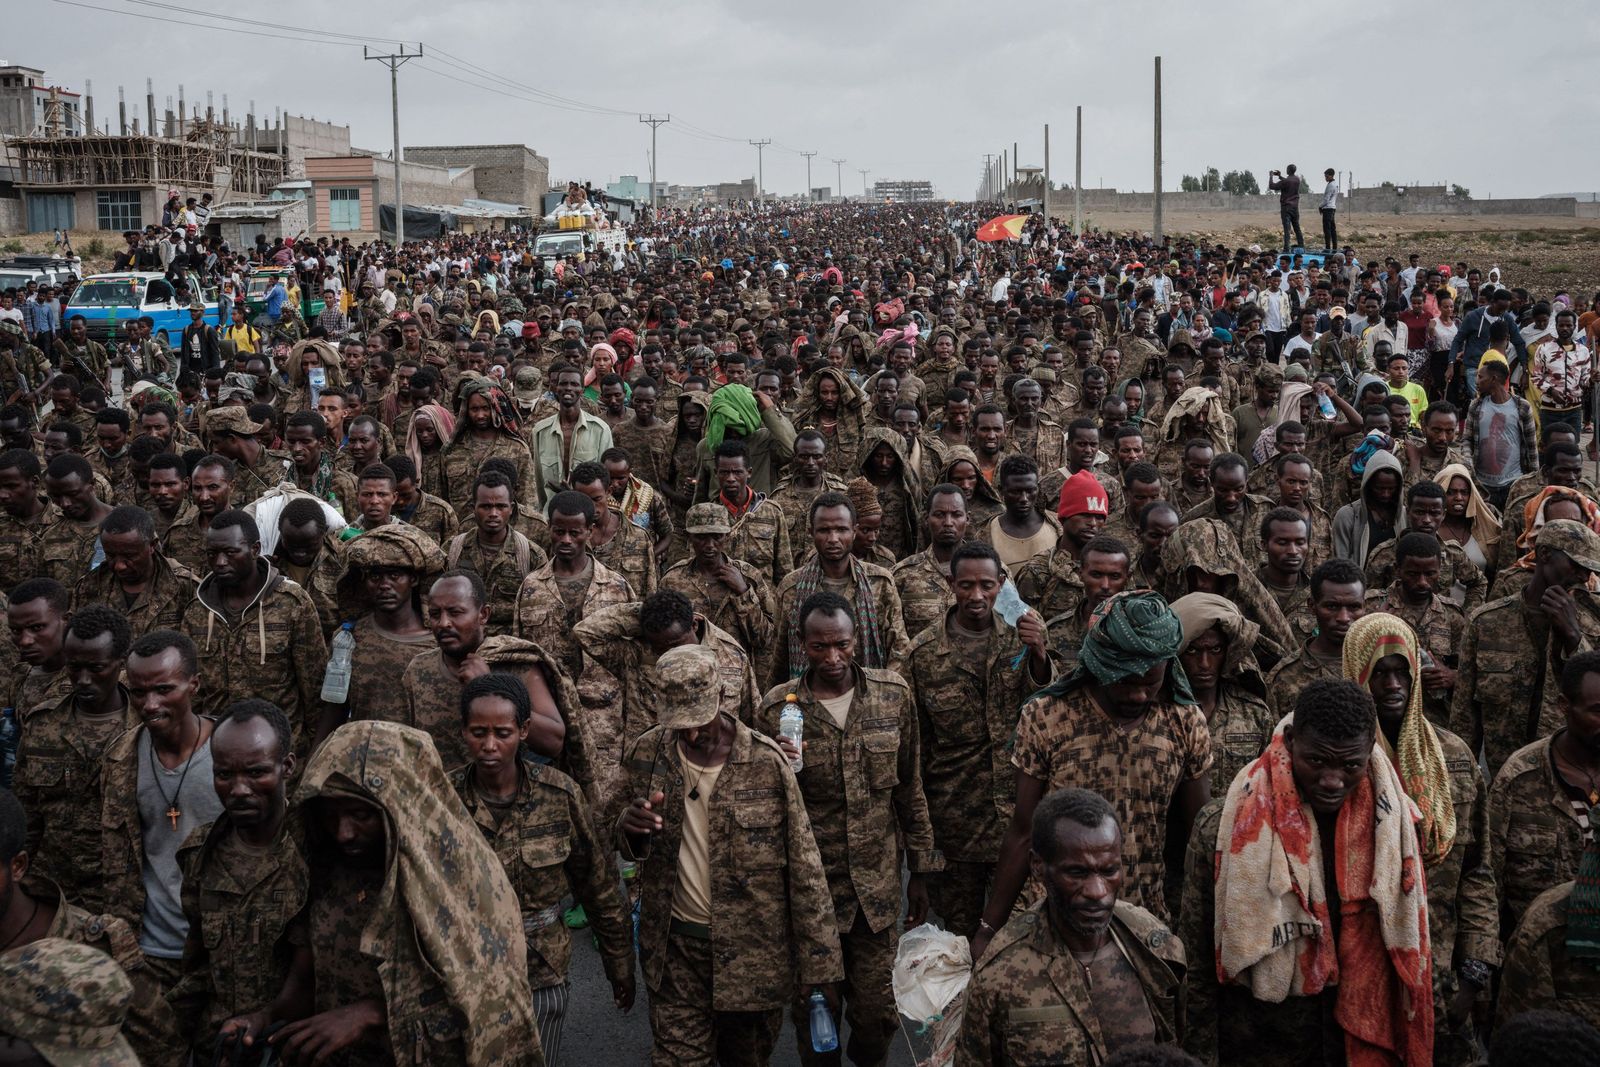 جنود إثيوبيون يسيرون باتجاه مركز ميكيلي لإعادة التأهيل في عاصمة منطقة تيغراي بإثيوبيا - 2 يوليو 2021 - AFP